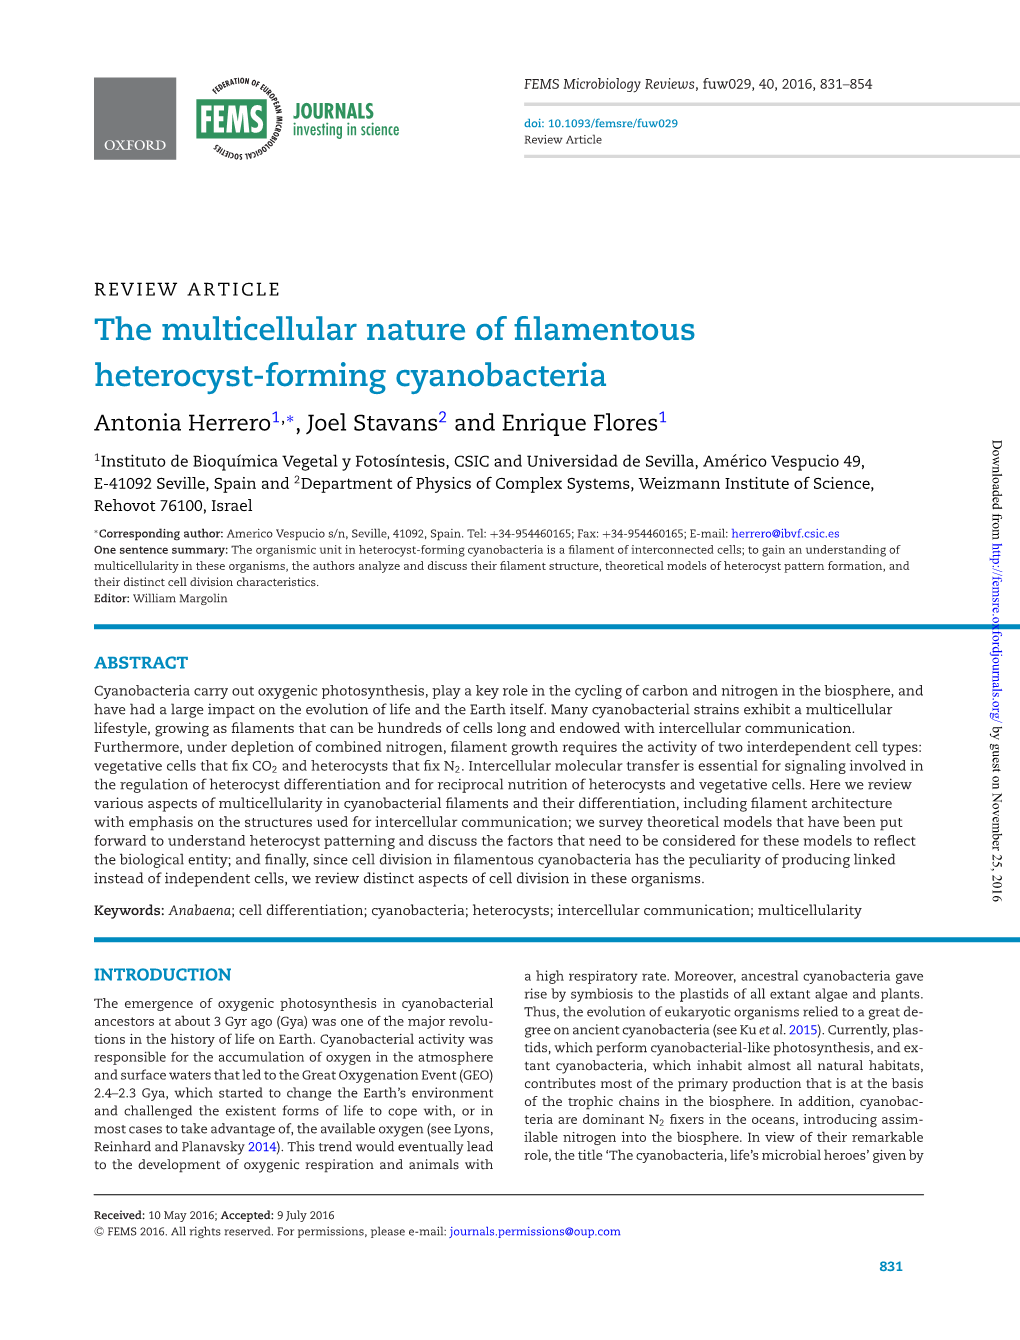 The Multicellular Nature of Filamentous Heterocyst-Forming Cyanobacteria Antonia Herrero1,∗,Joelstavans2 and Enrique Flores1 Downloaded From